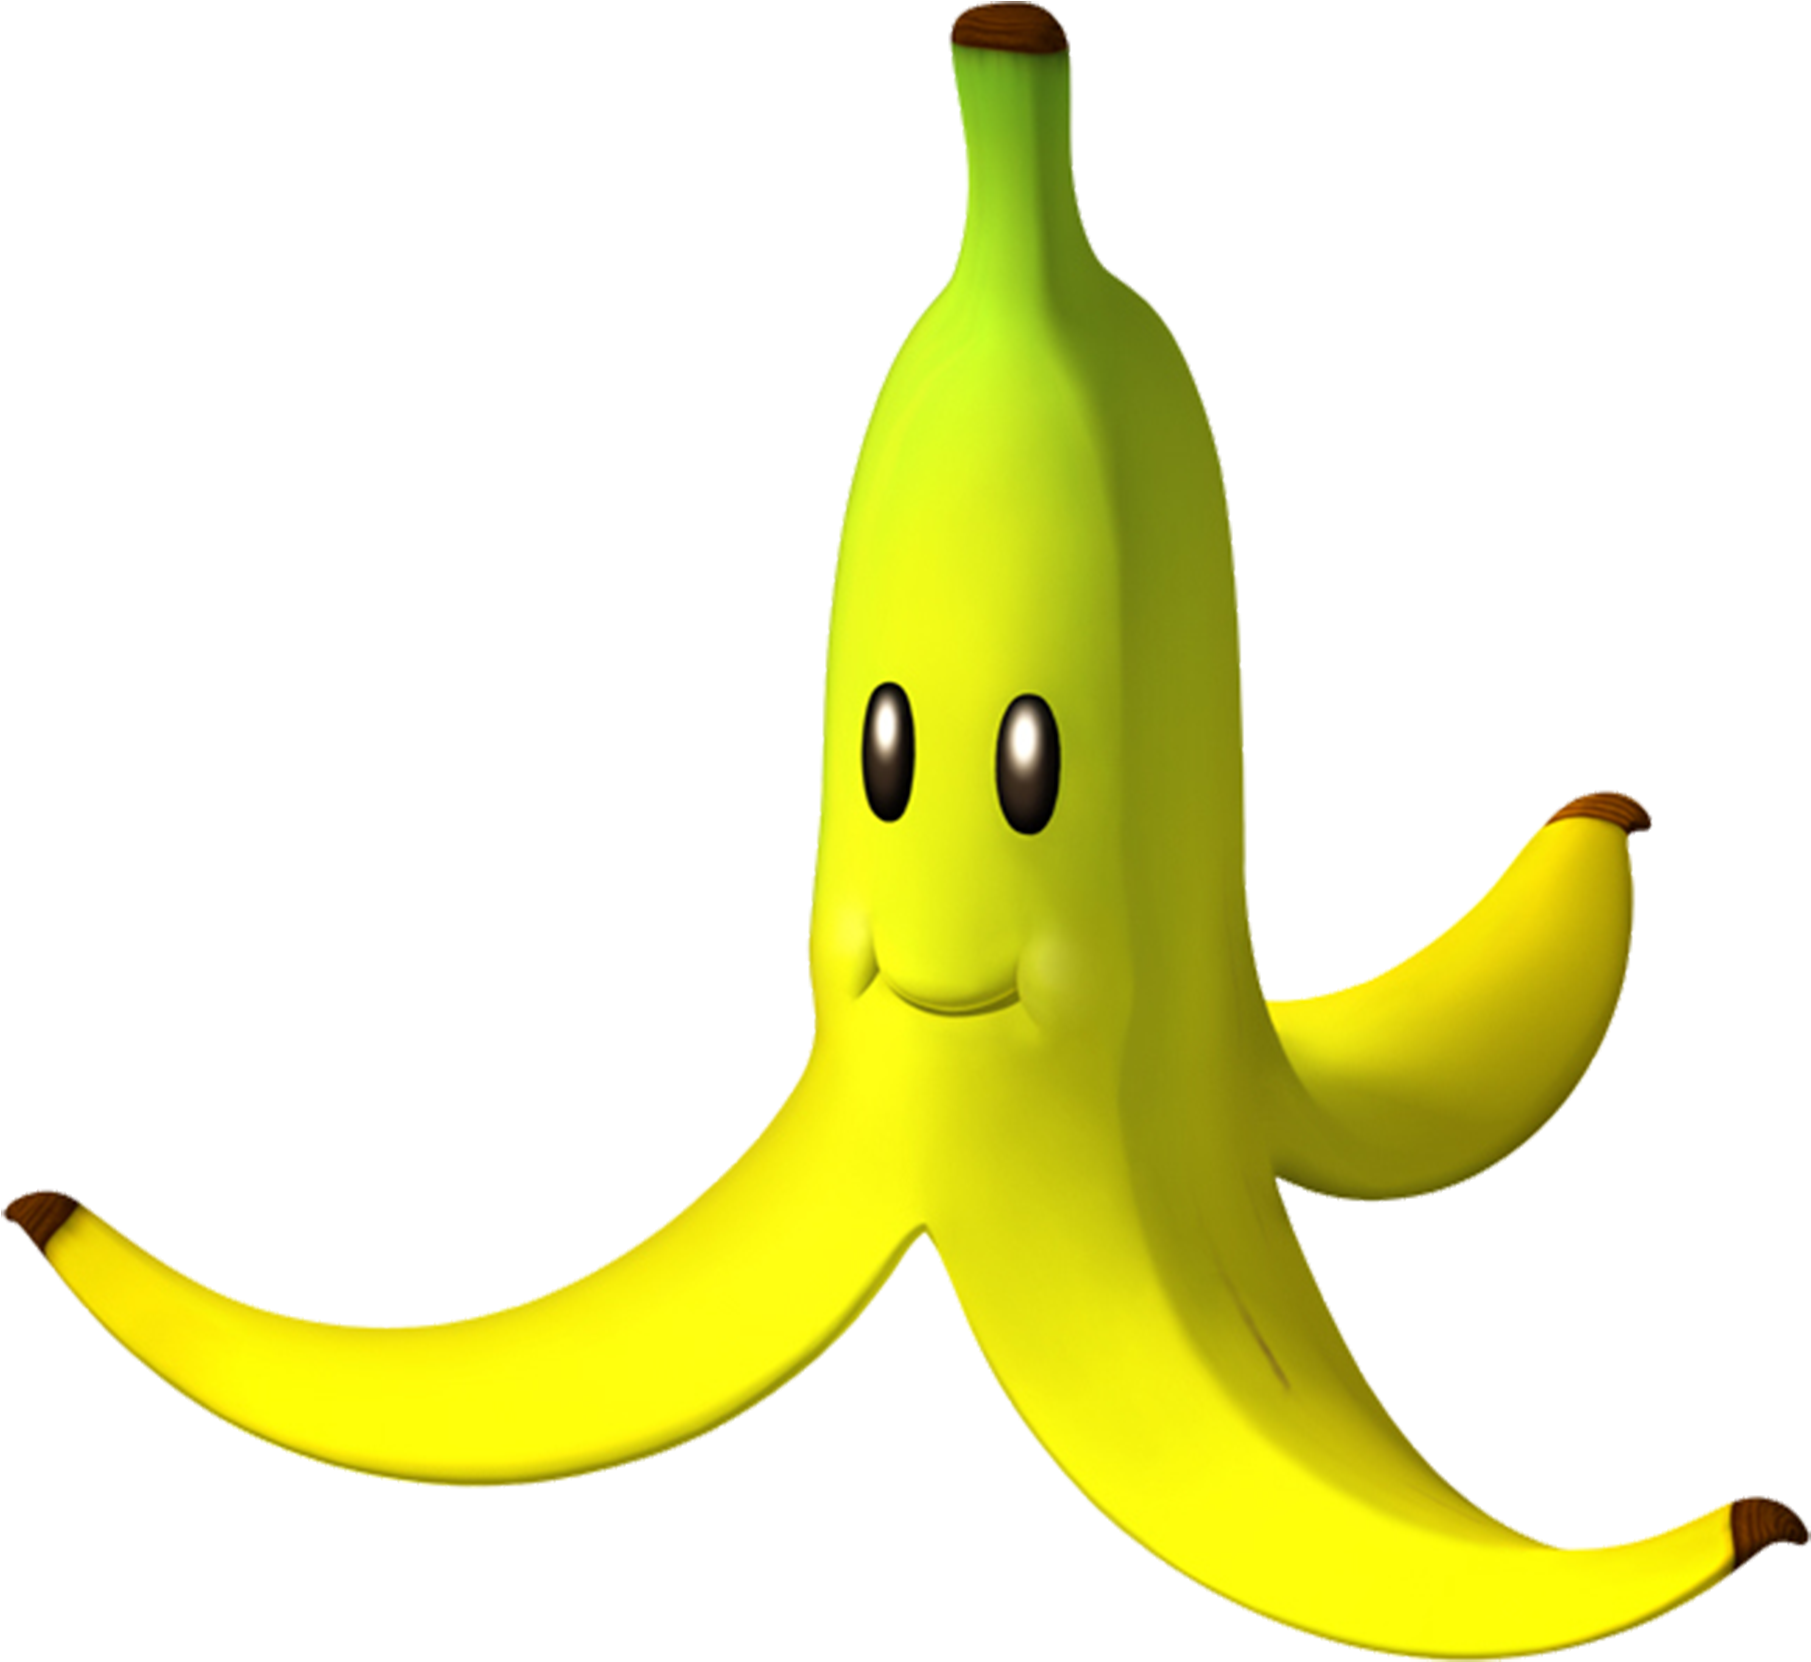 Banana Clipart Mario - Mario Kart Banana Peel.